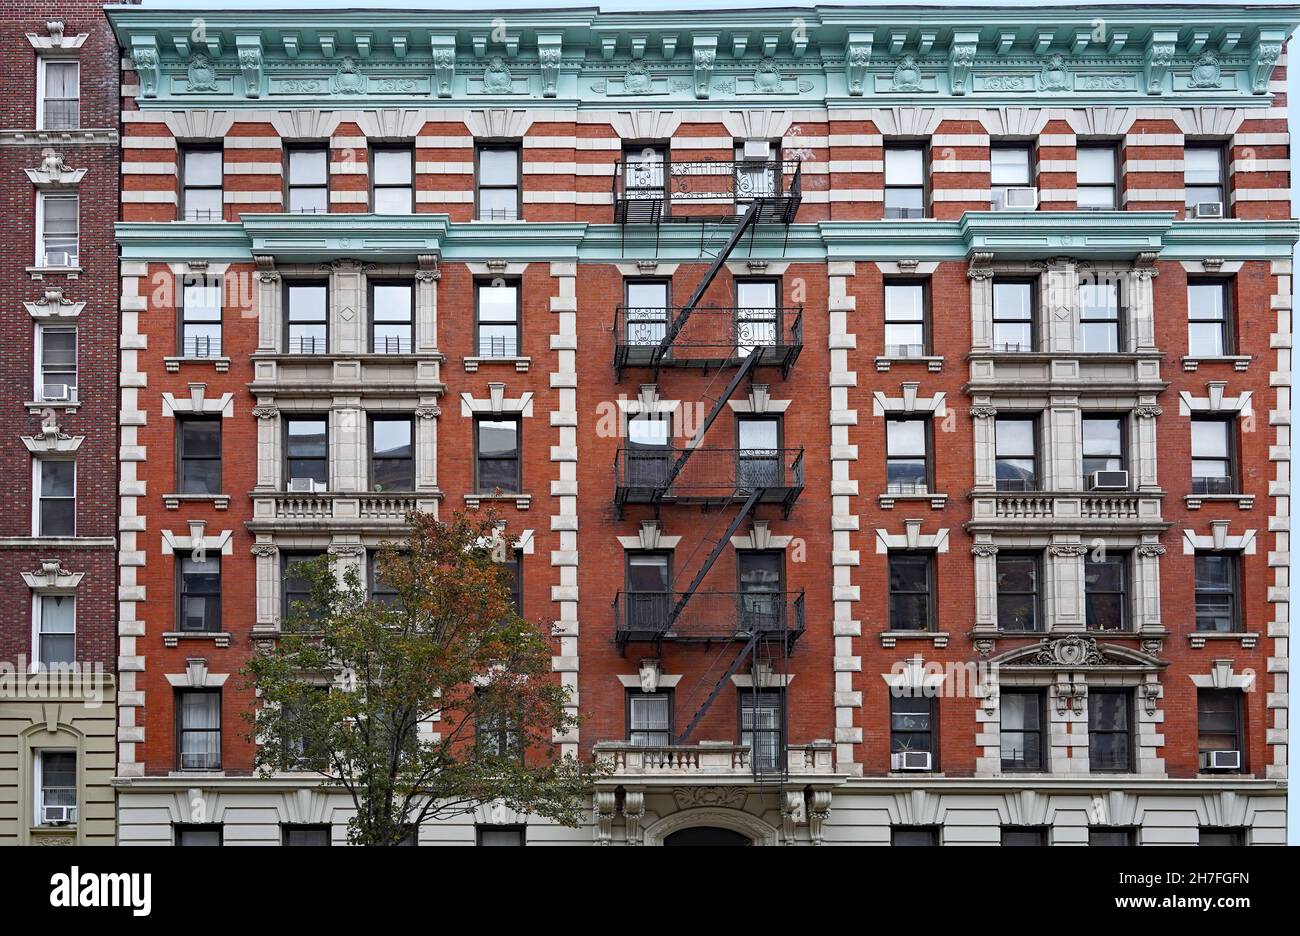 Altmodische Fassade eines Wohnhauses in Manhattan mit verzierten Dachziegeln und externen Feuertreppen Stockfoto